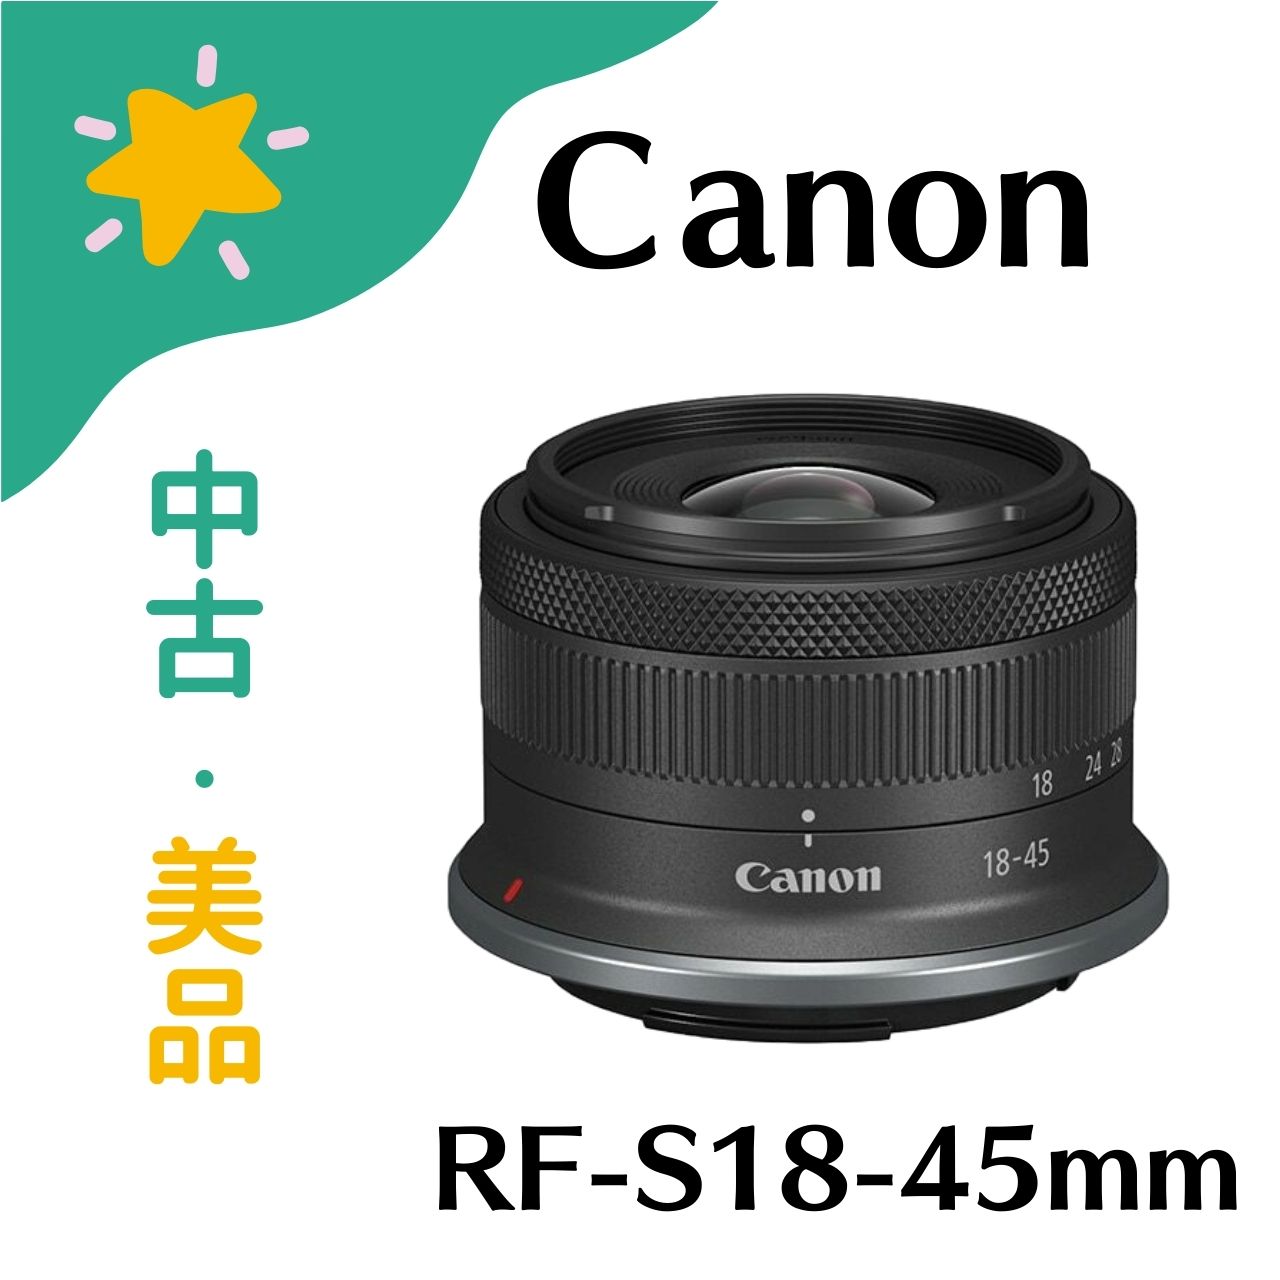 【中古美品】本体のみ Canon RF-S18-45mm F4.5-6.3 IS STM 交換レンズ レンズ カメラ キヤノン 中古品 中古 美品 中古美品 4549292188325